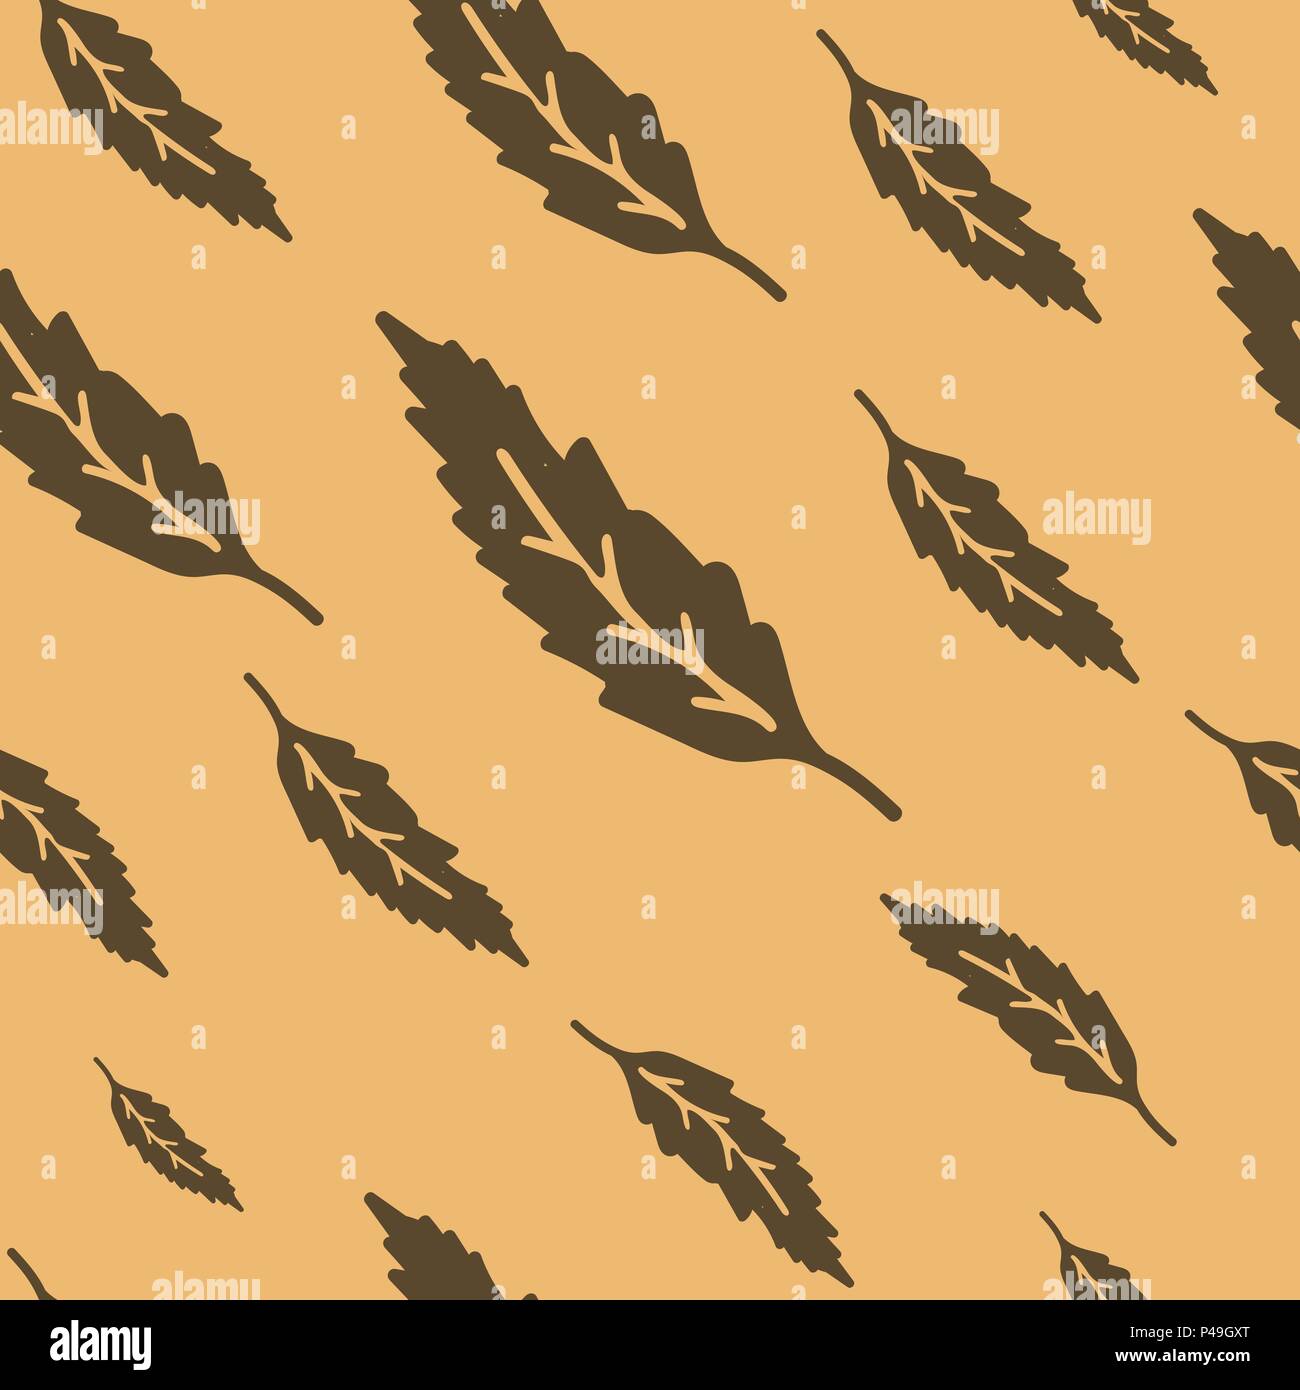 Ilustración vectorial de hojas marrones patrón sin fisuras. Plano de fondo de color beige. Ambiente moderno y colores Ilustración del Vector